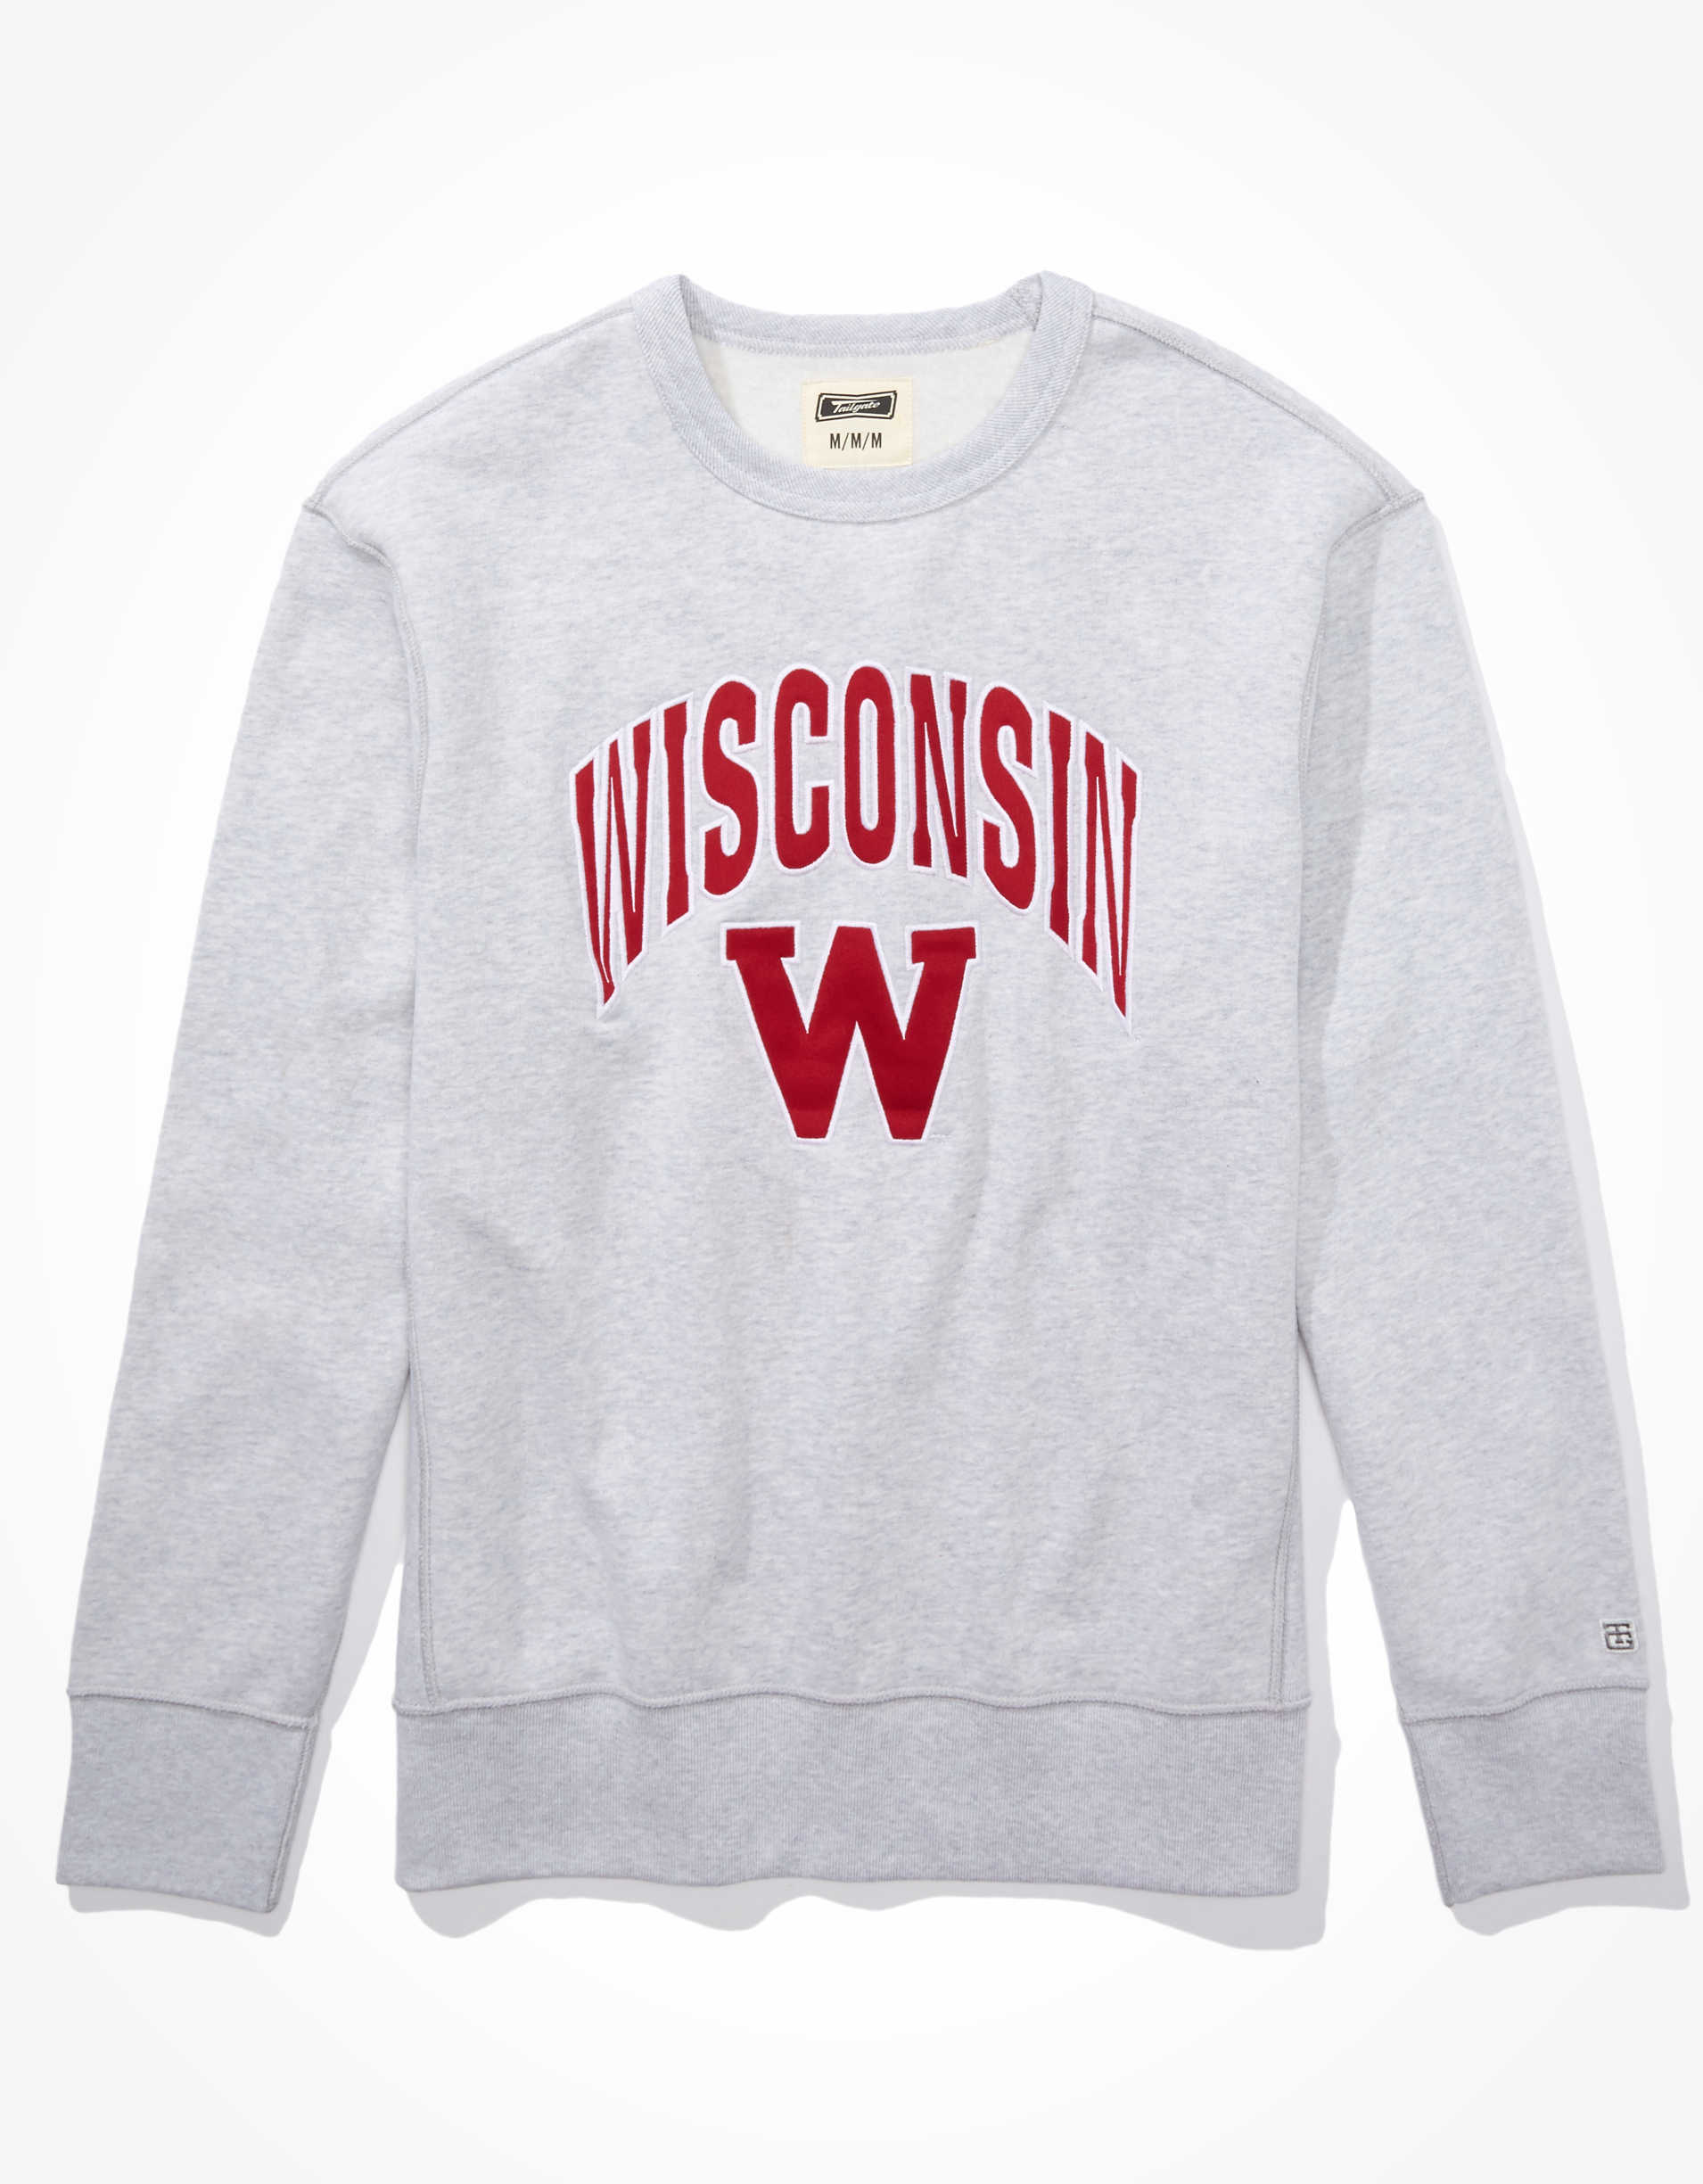 Tailgate Men's Wisconsin Badgers Crew Neck Sweatshirt